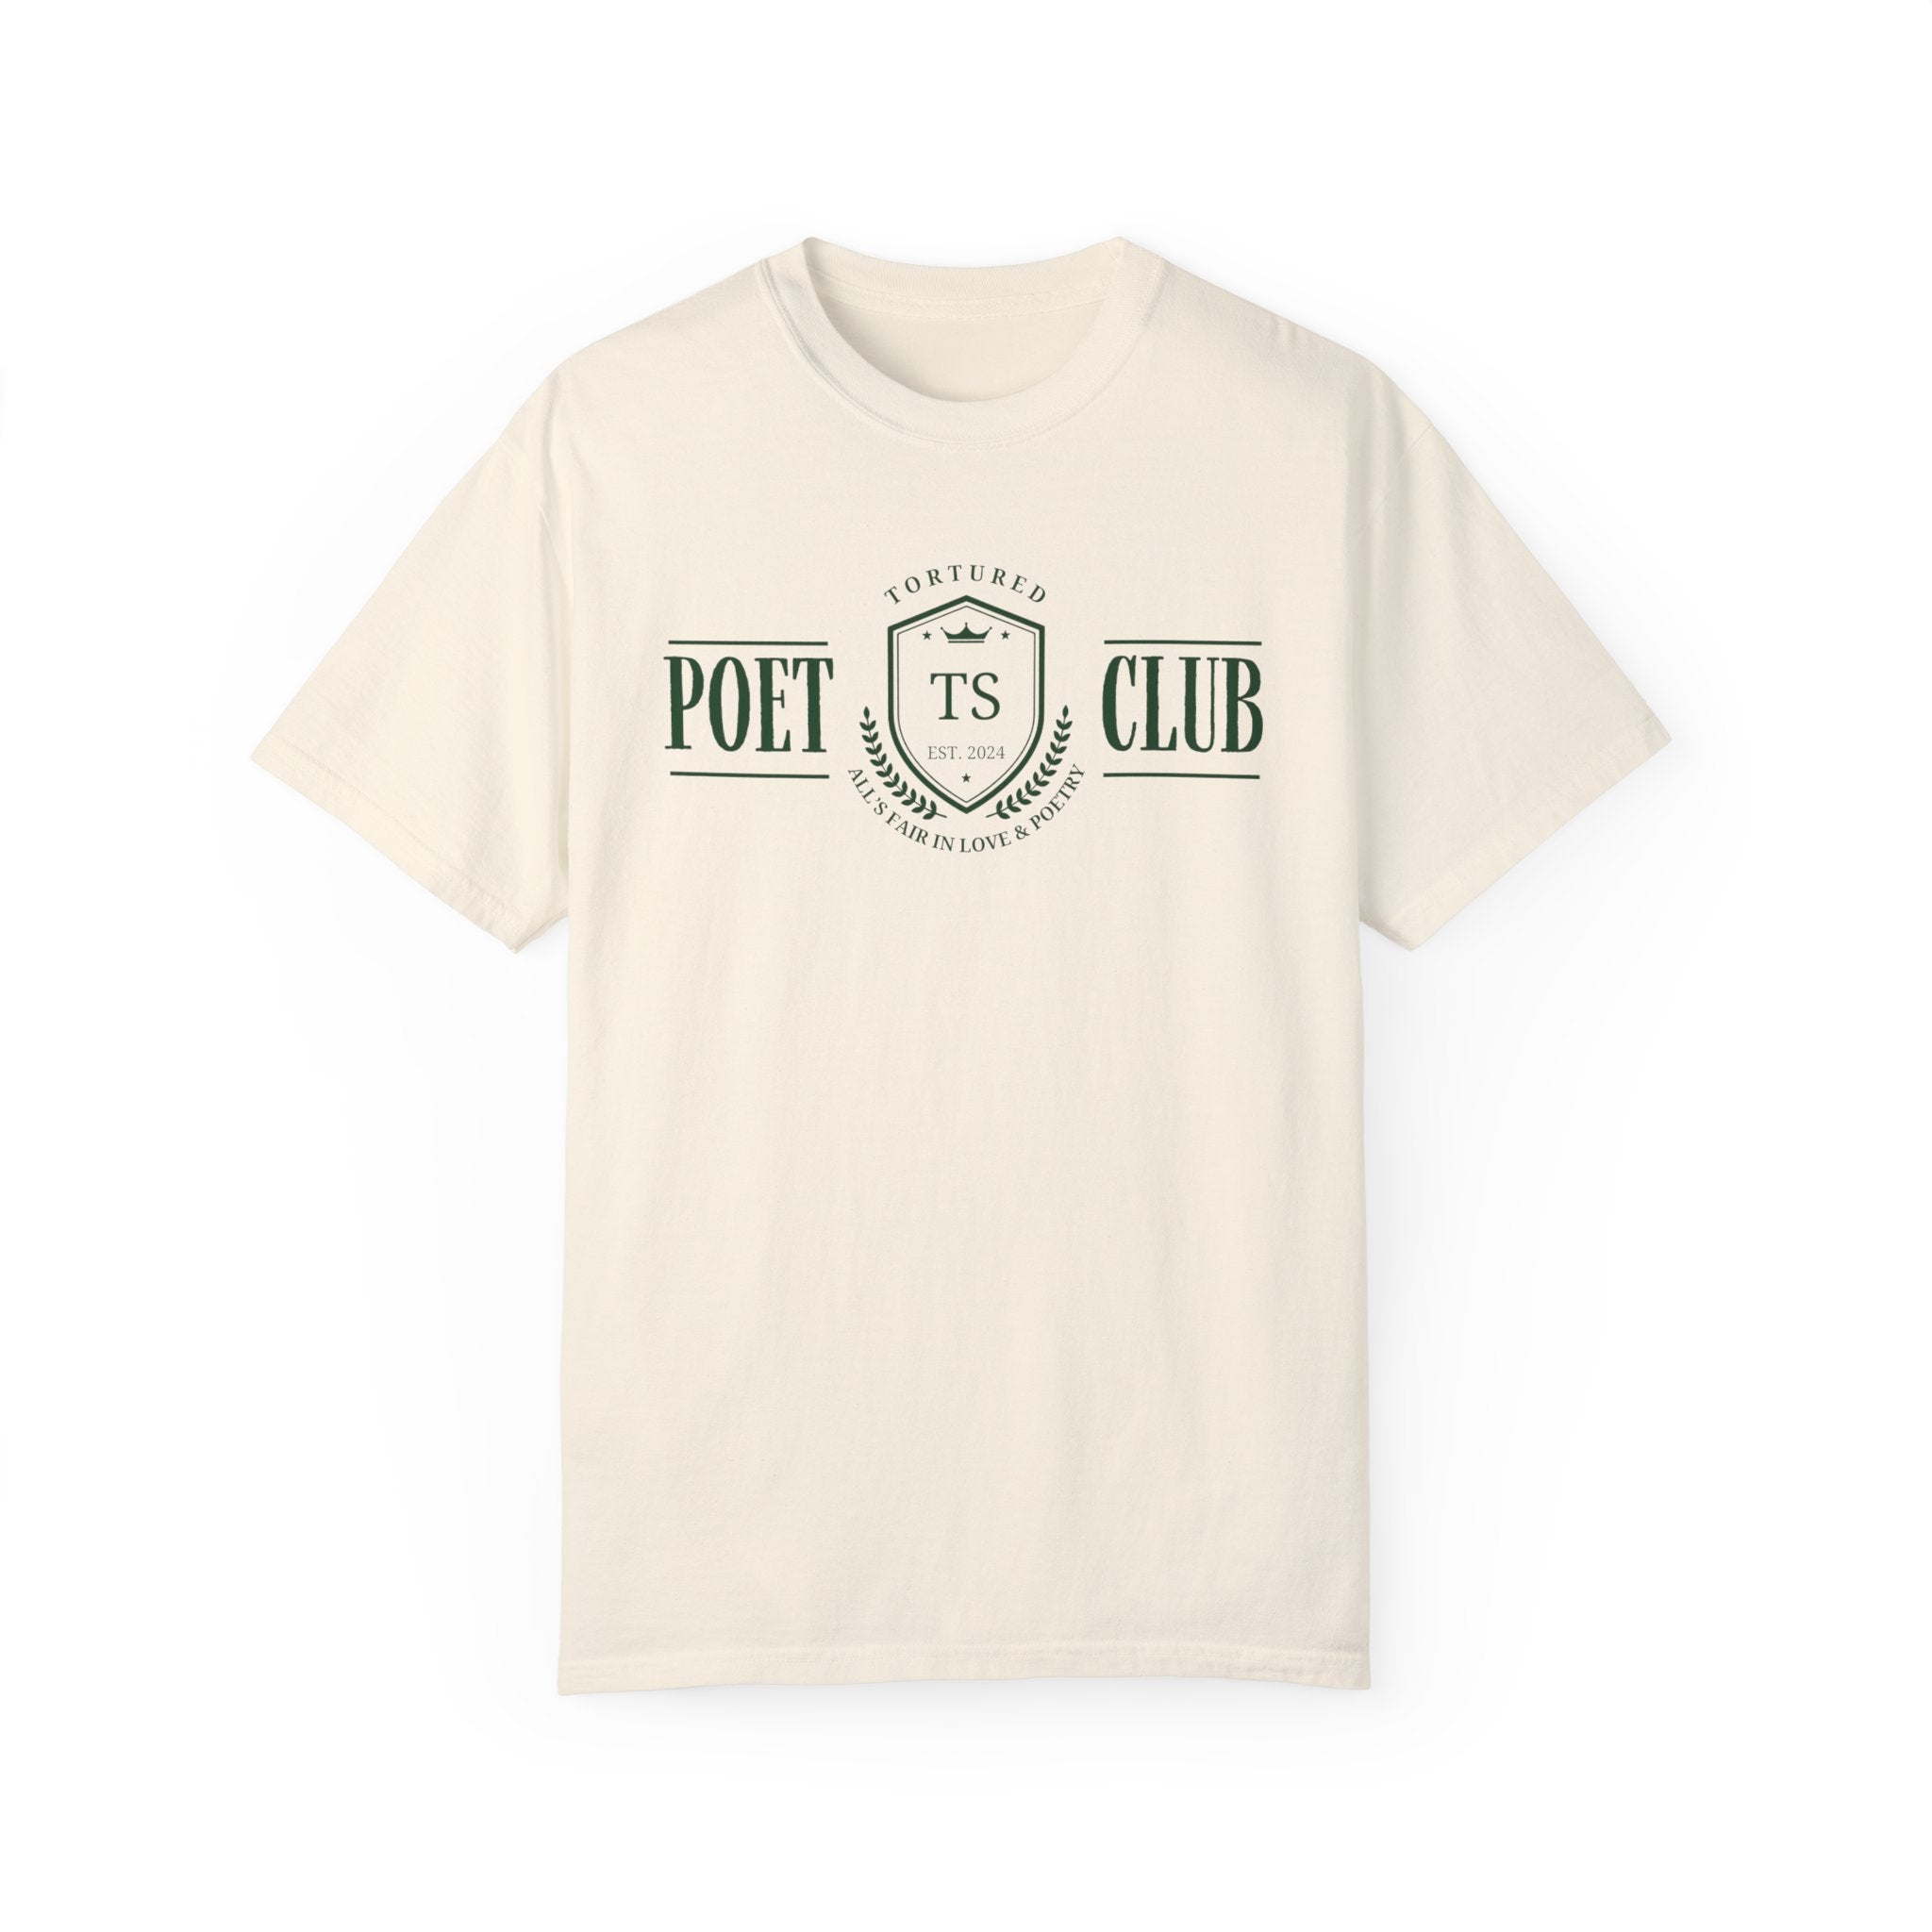 POET CLUB TEE SHIRT